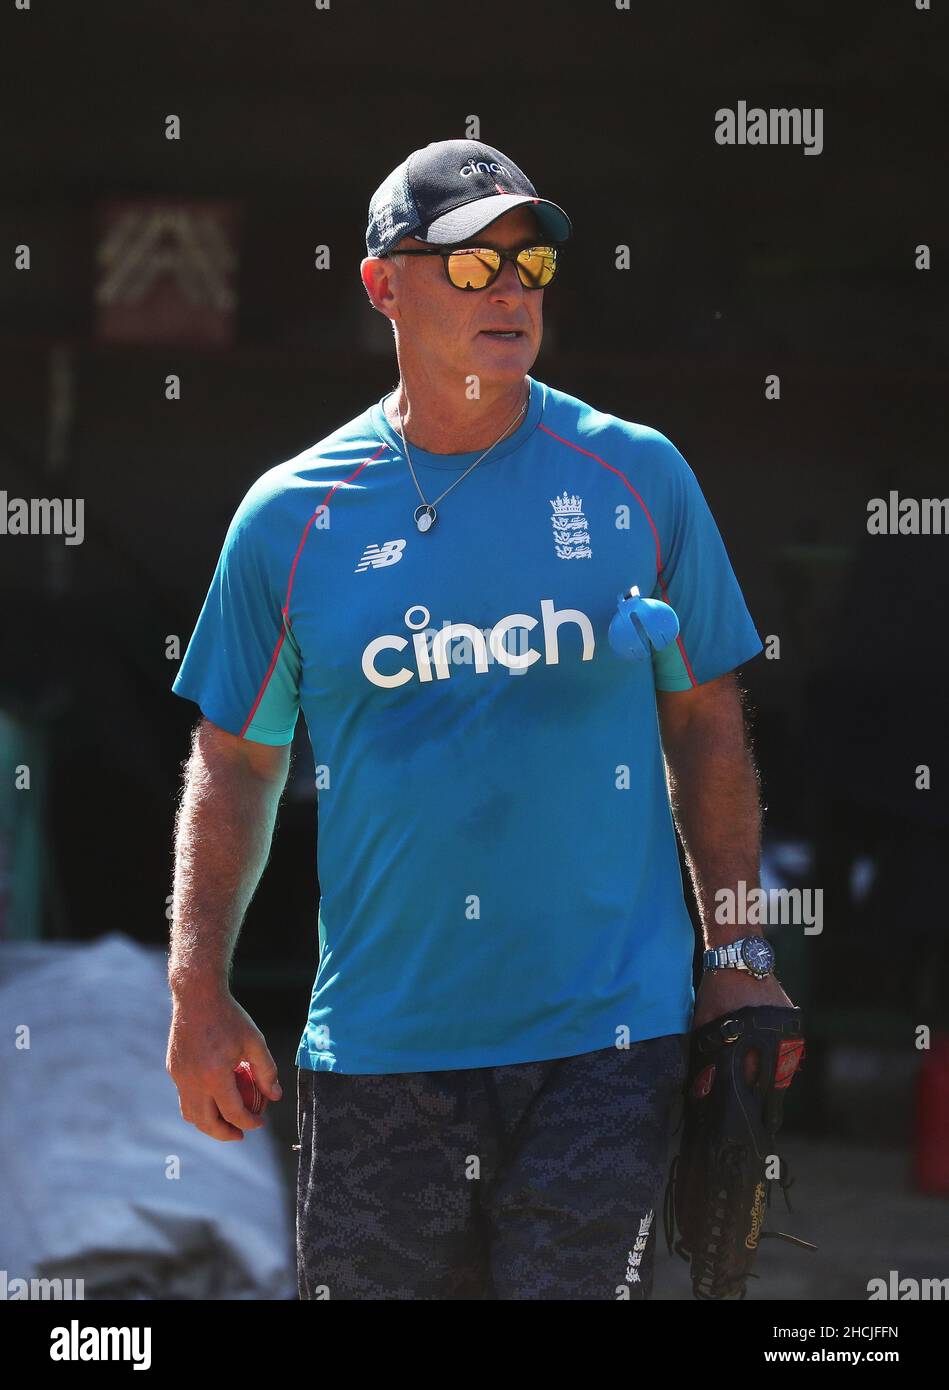 L'assistente dell'Inghilterra Graham Thorpe durante una sessione di reti al Melbourne Cricket Ground, Melbourne. Data immagine: Giovedì 30 dicembre 2021. Foto Stock